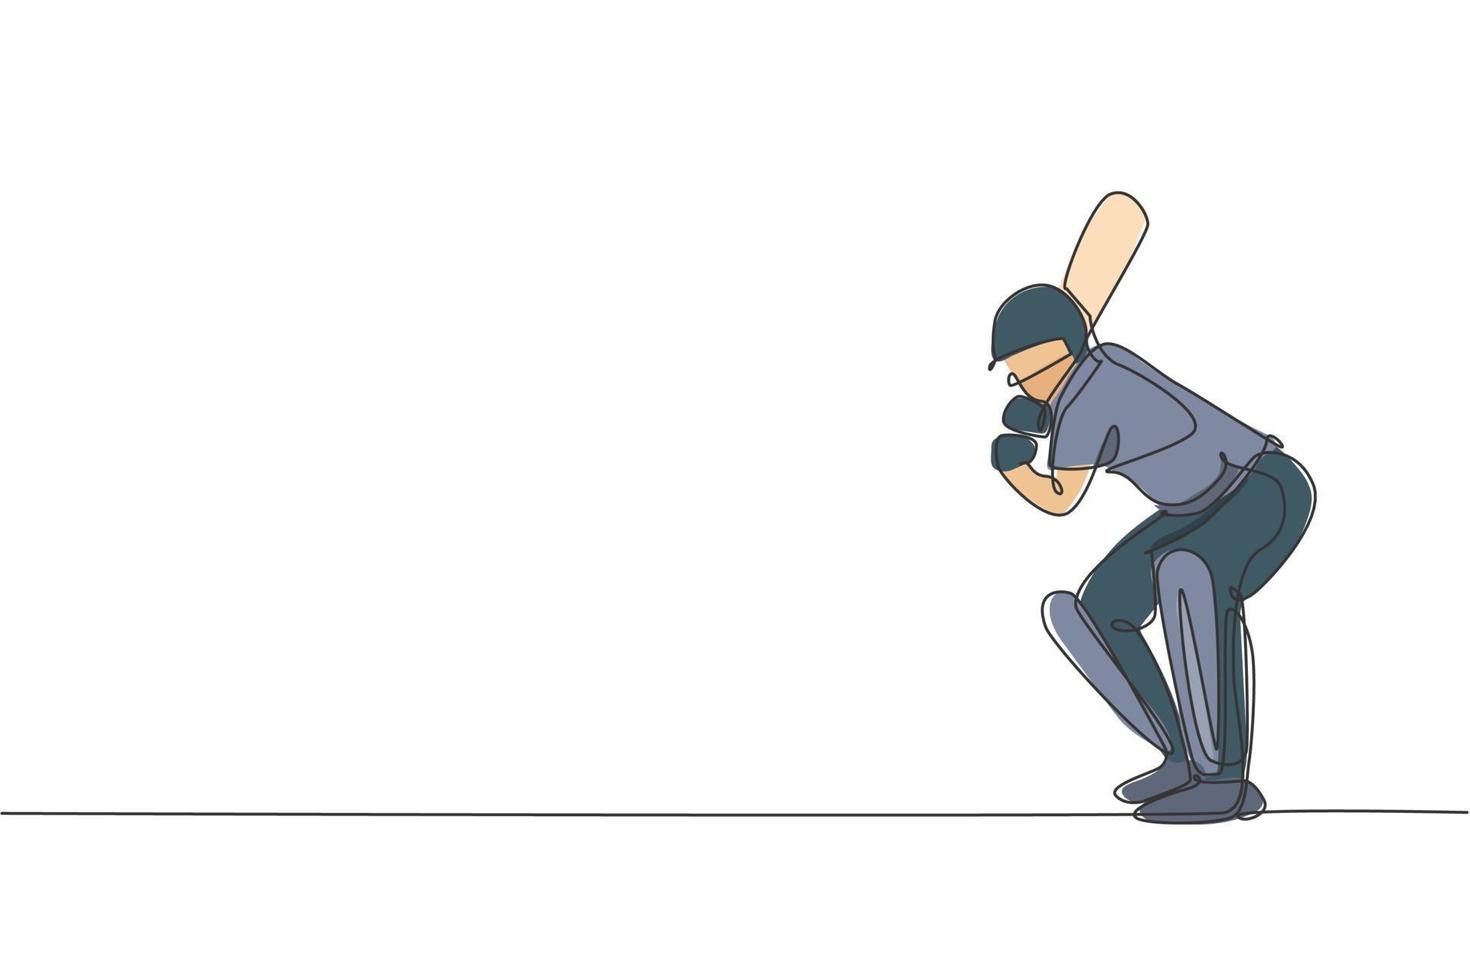 en kontinuerlig linjeteckning av ung man cricket spelare ställning stående för att ta emot bollen från pitcher vektorillustration. sport koncept. dynamisk enda linje rita design för reklam affisch vektor